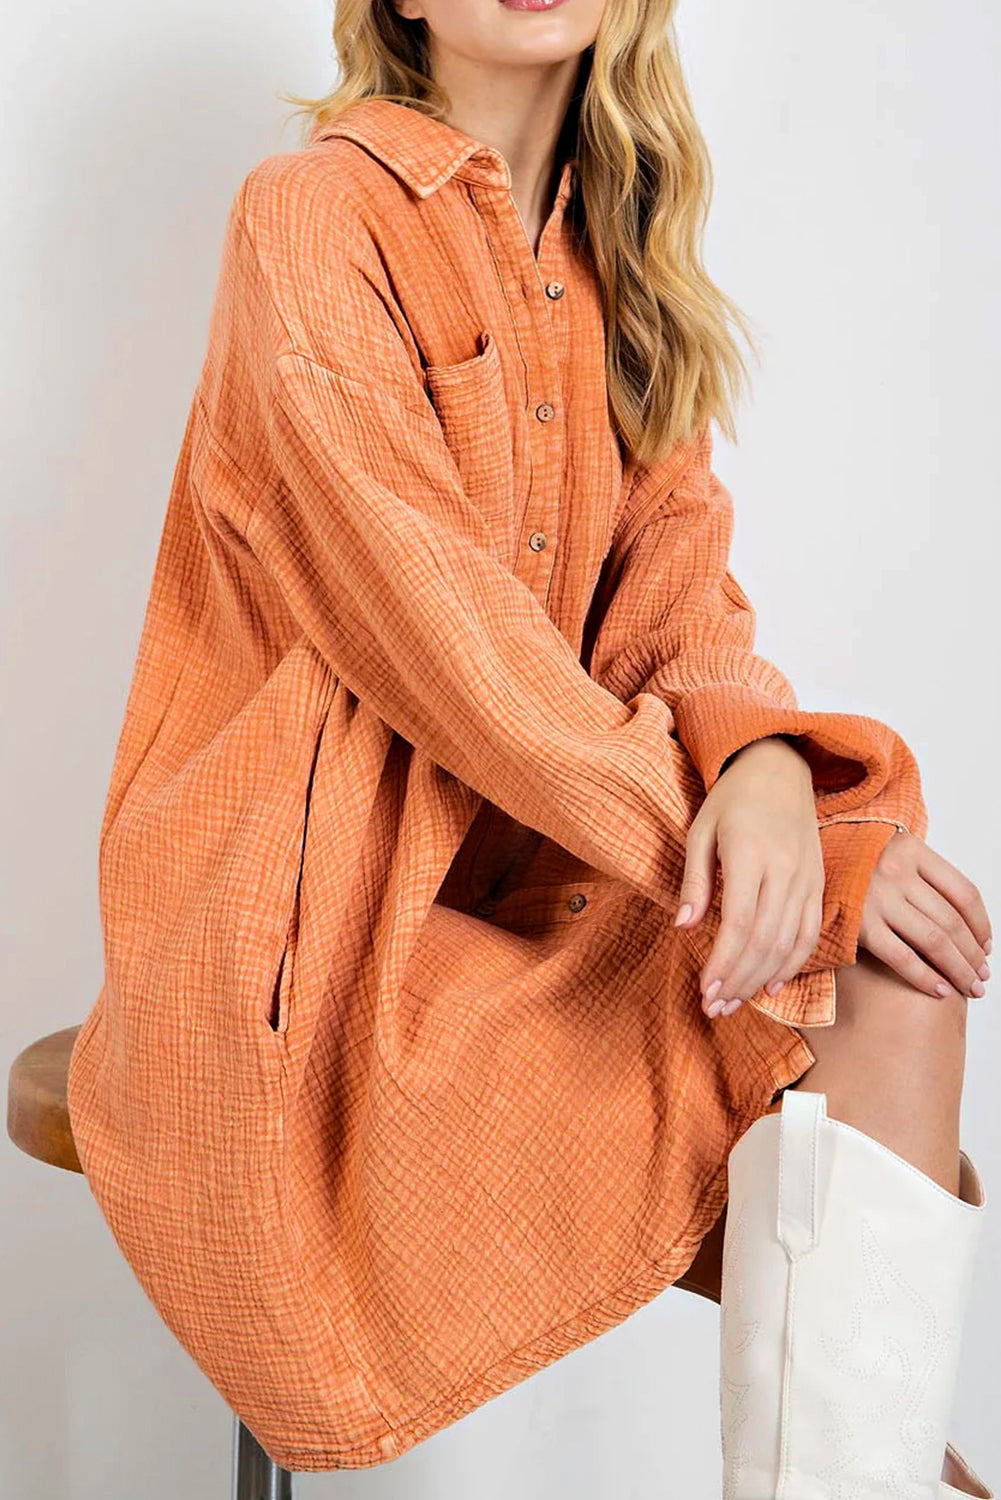 Orangefarbenes, übergroßes Hemdkleid mit zwei Brusttaschen in Knitteroptik